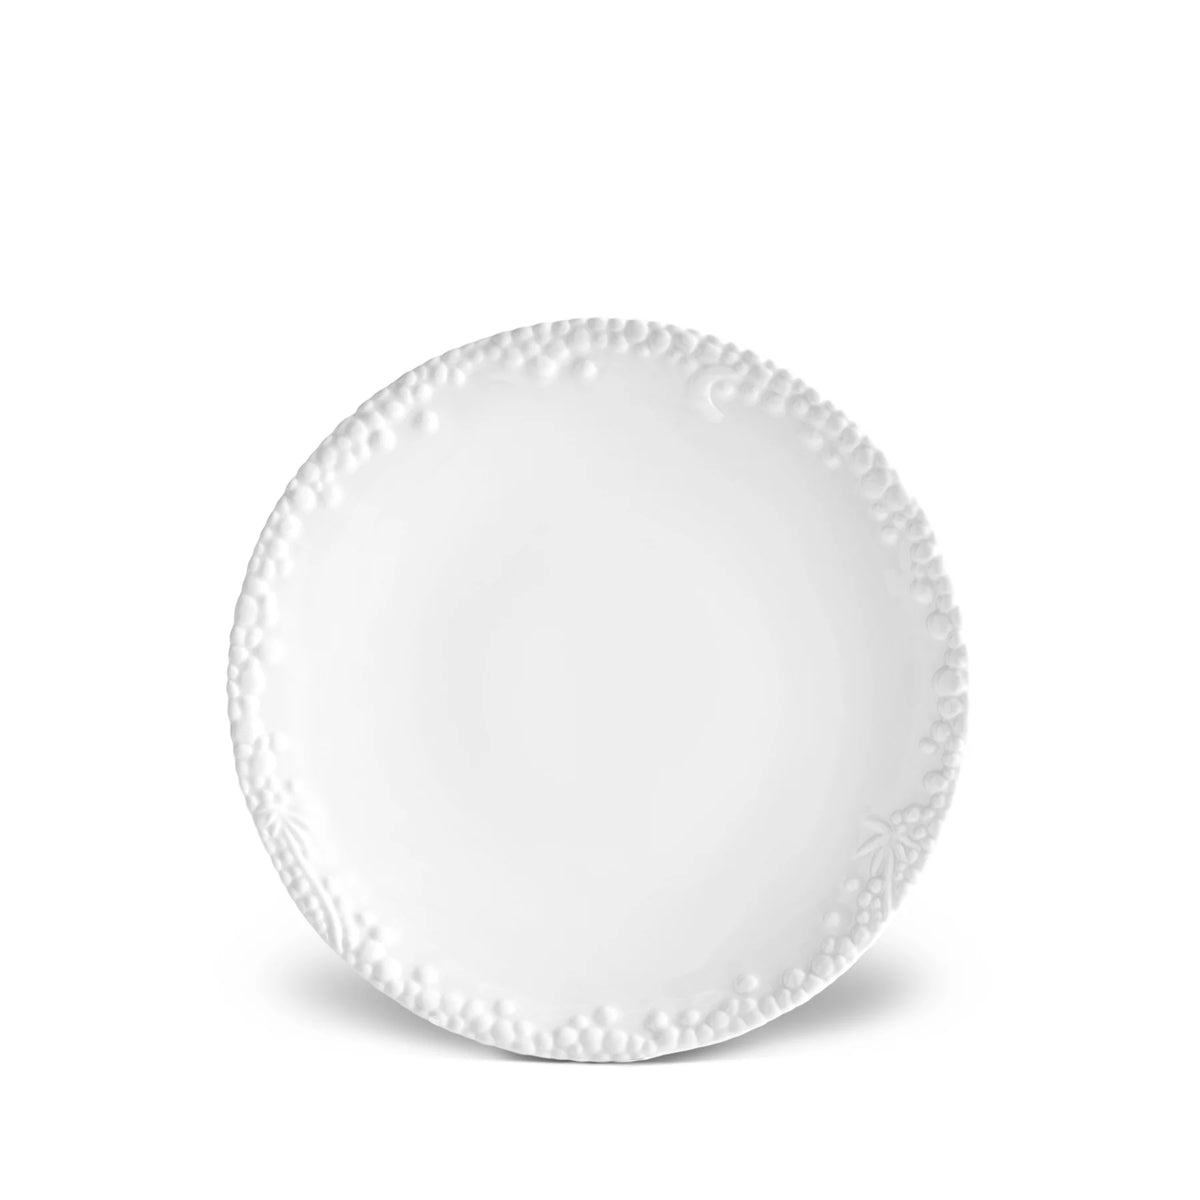 Haas Mojave Desert Dessert Plate - White